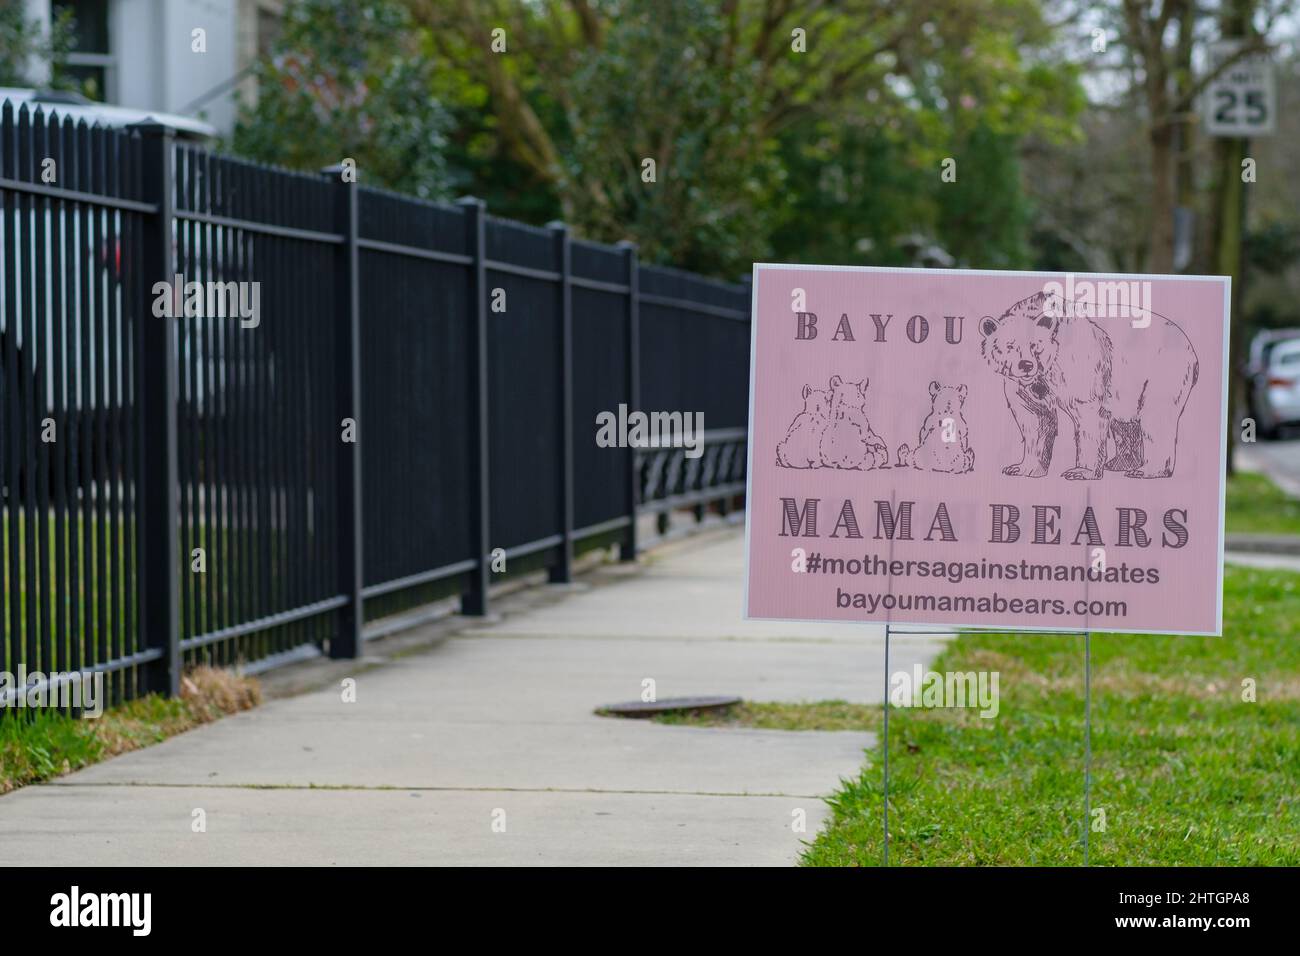 NEW ORLEANS, LA, USA - 27. FEBRUAR 2022: „Bayou Mama Bears“-Schild am Bürgersteig des Uptown House für Mütter, die gegen Impfmandate sind Stockfoto